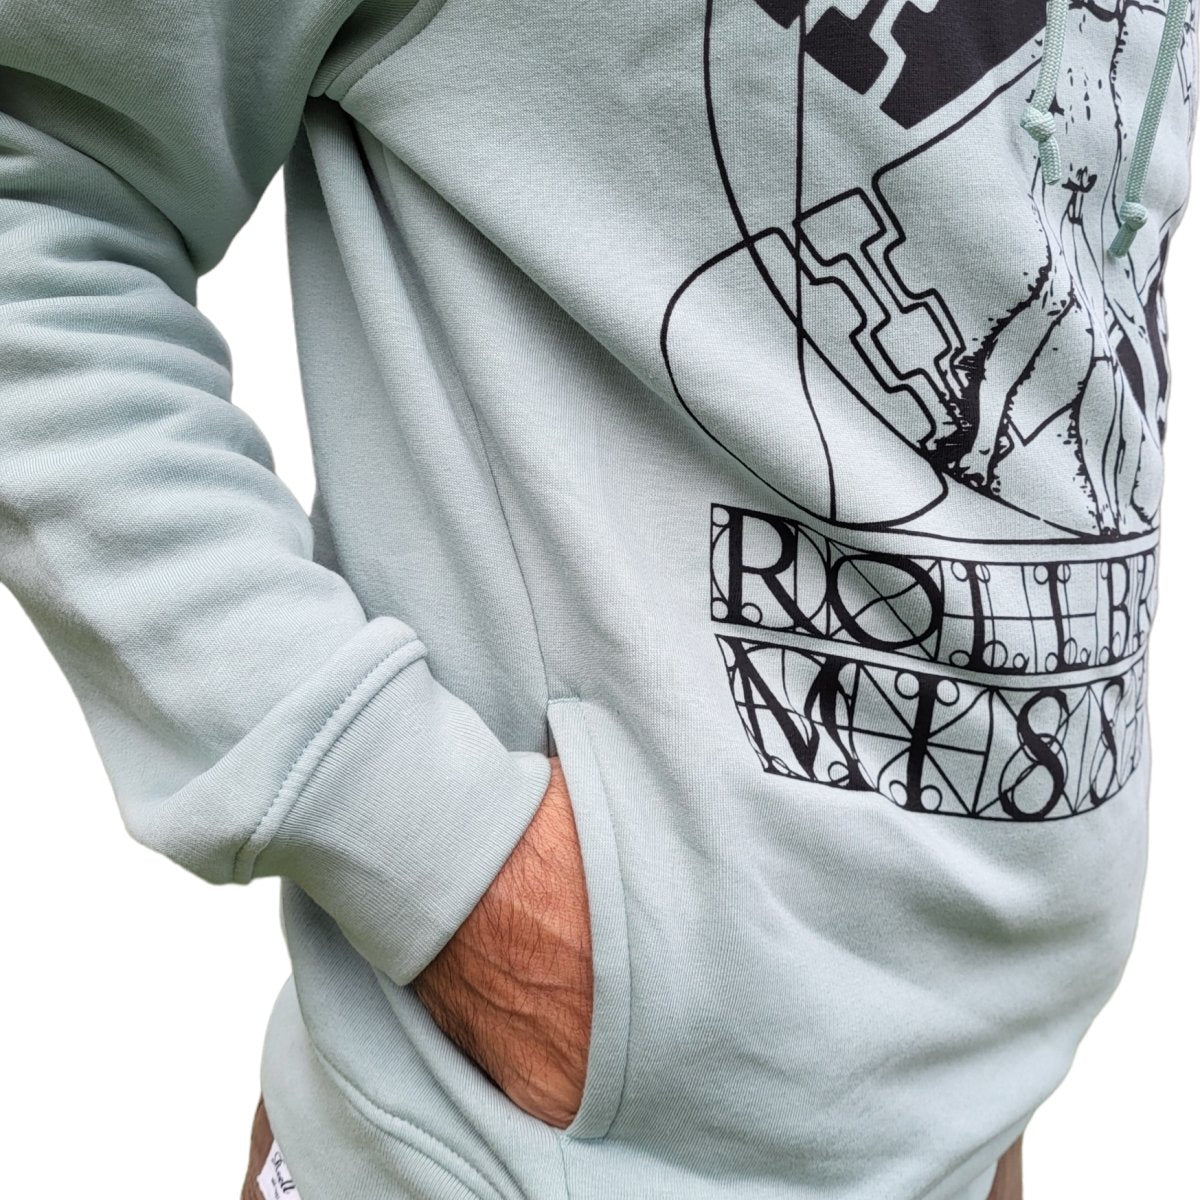 Rollbrett Mission Organic Vitruvian Hoodie salbei - Shirts & Tops - Rollbrett Mission